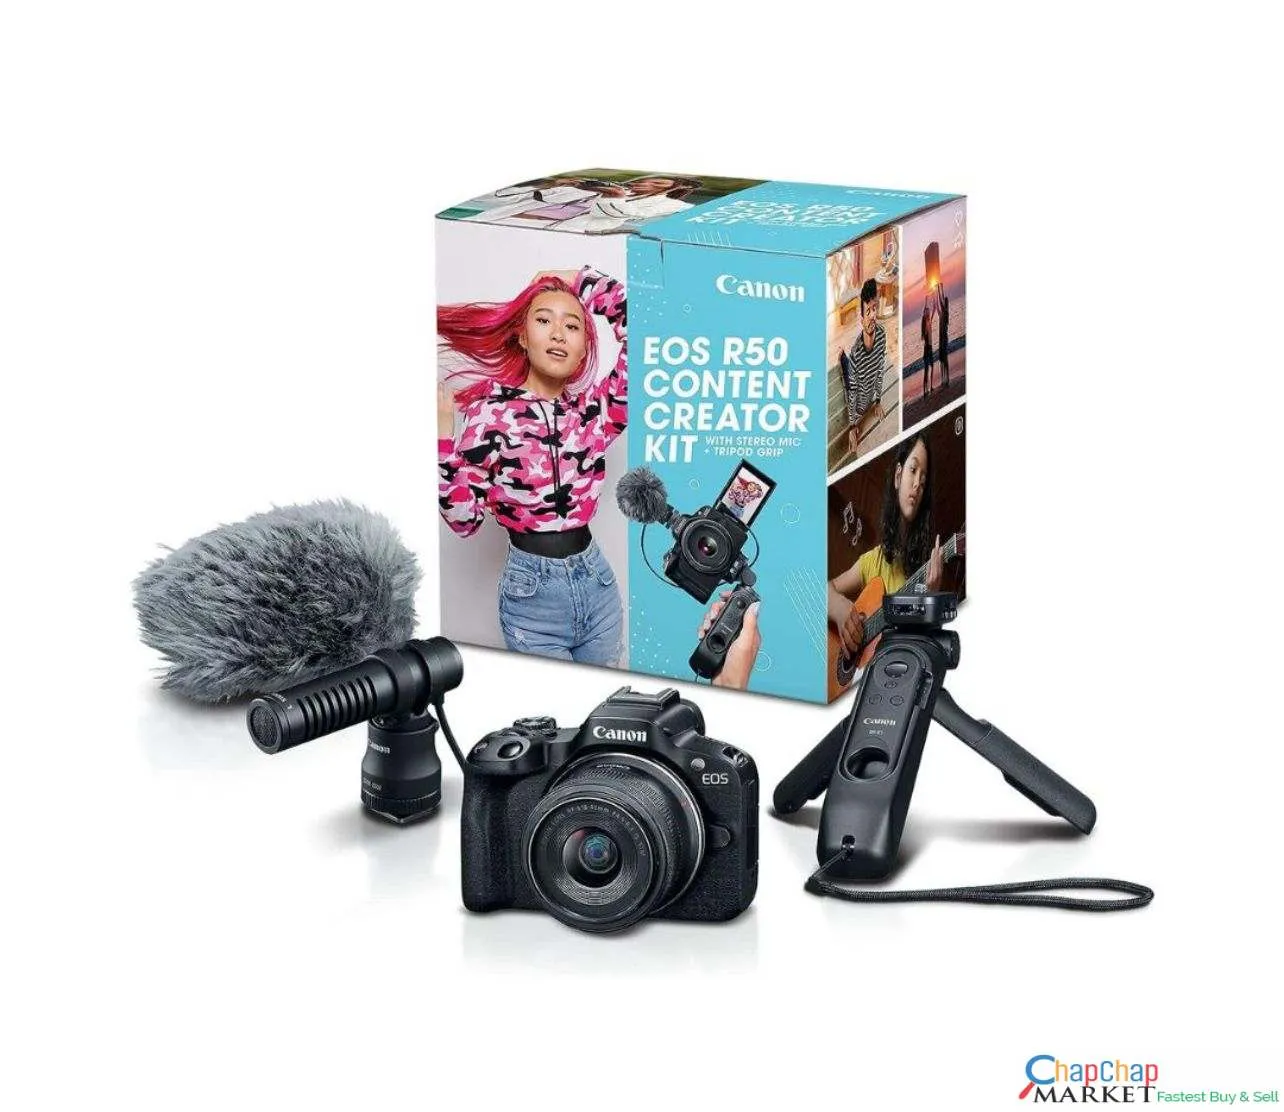 QUICKEST SALE Canon EOS R50 Content Creator Kit, Mirrorless Vlogging canon Camera, 24.2 MP, 4K Video.